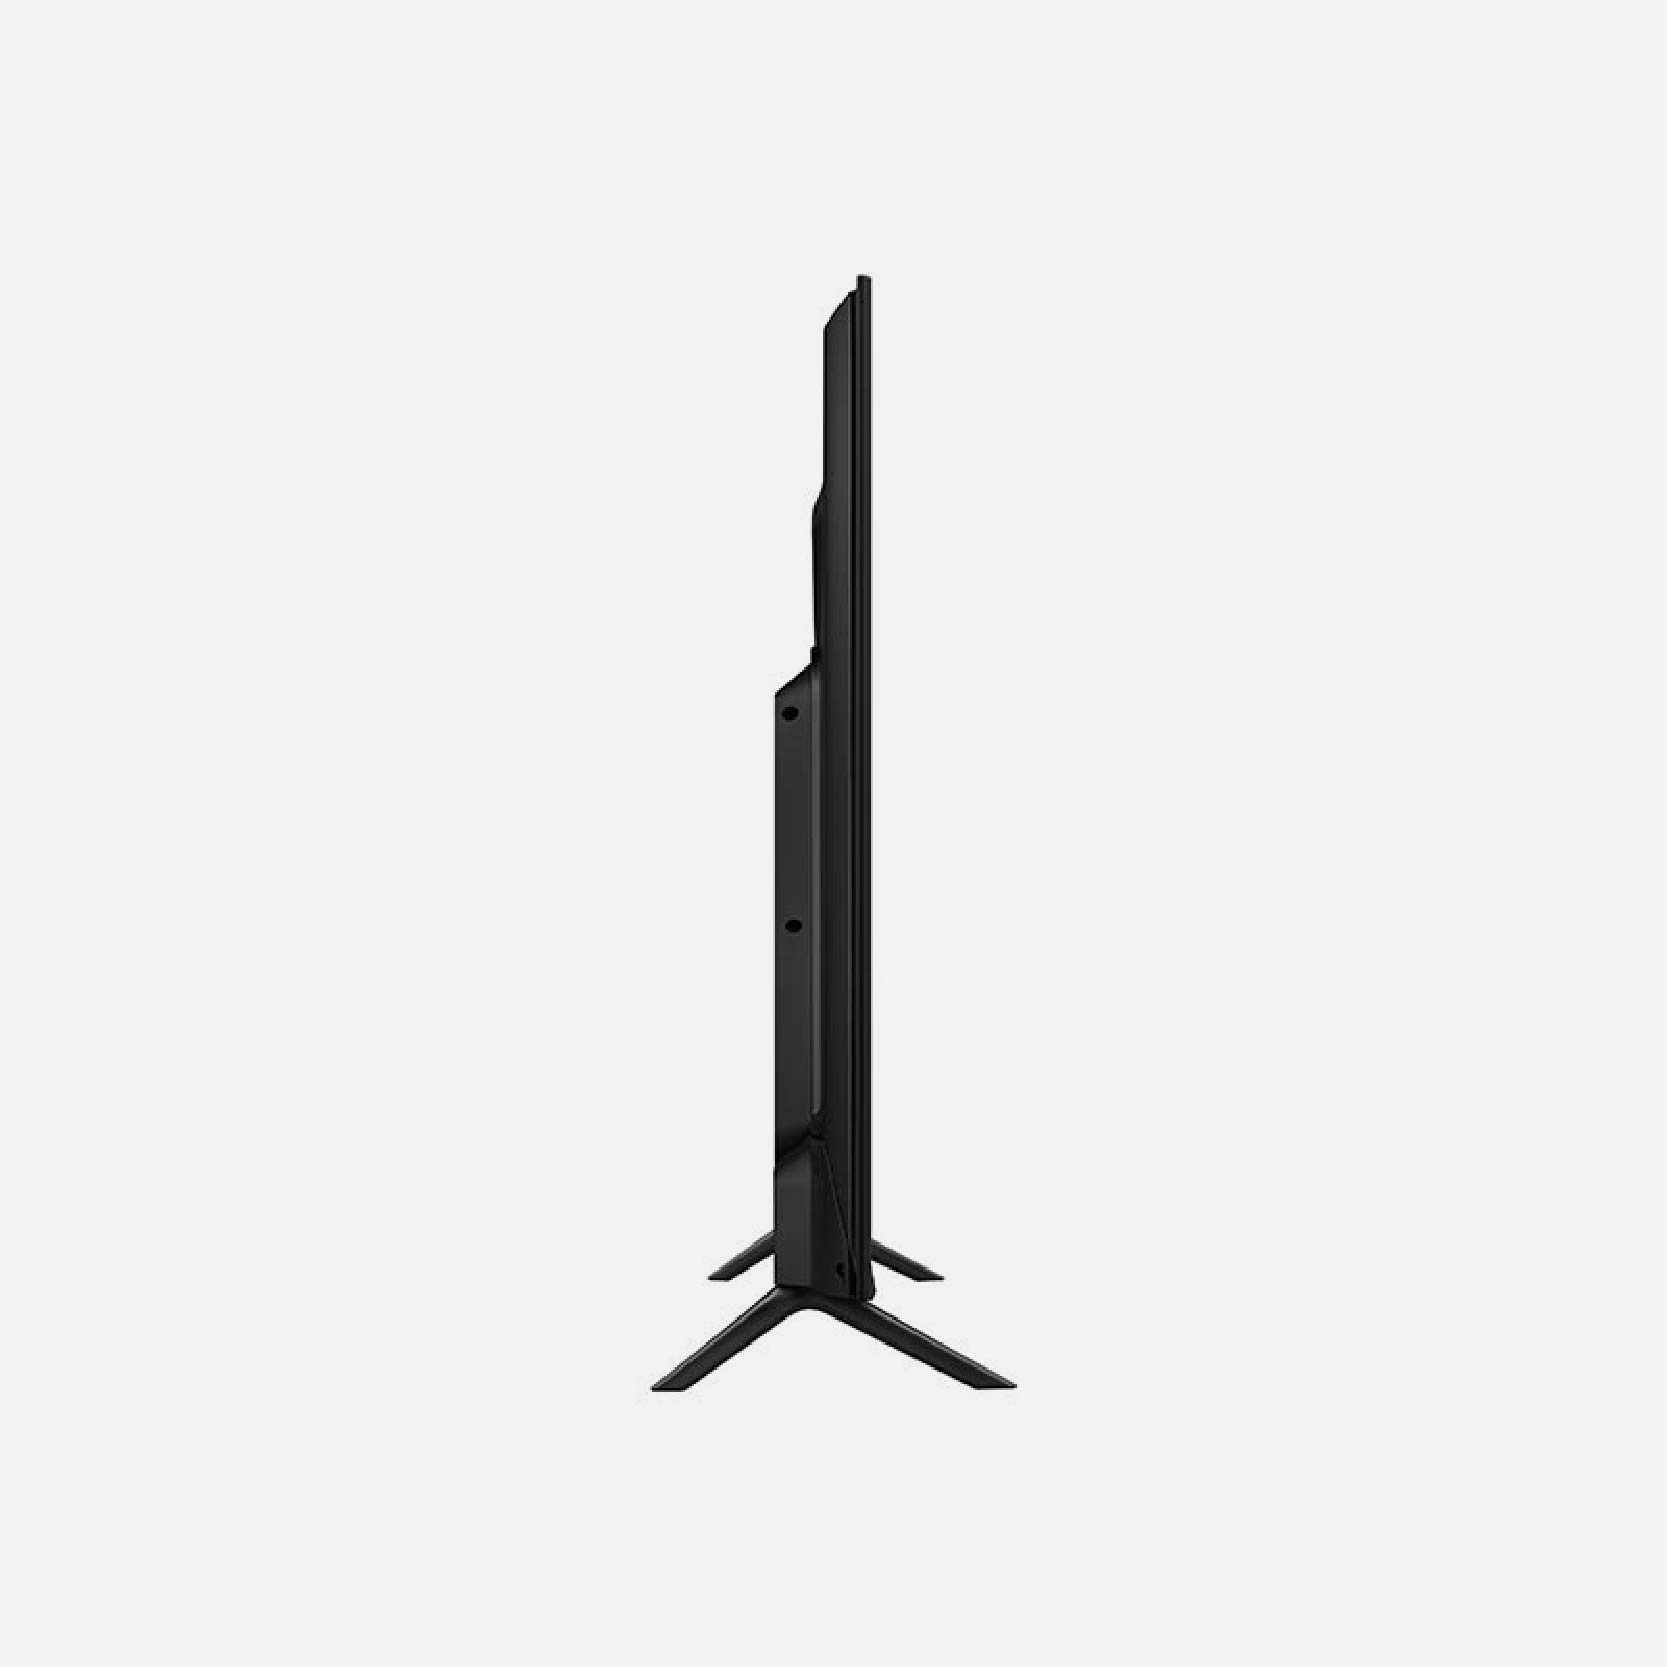 SAMSUNG SMART TV LED UHD 4K 55 UN55AU7090GXZS 3